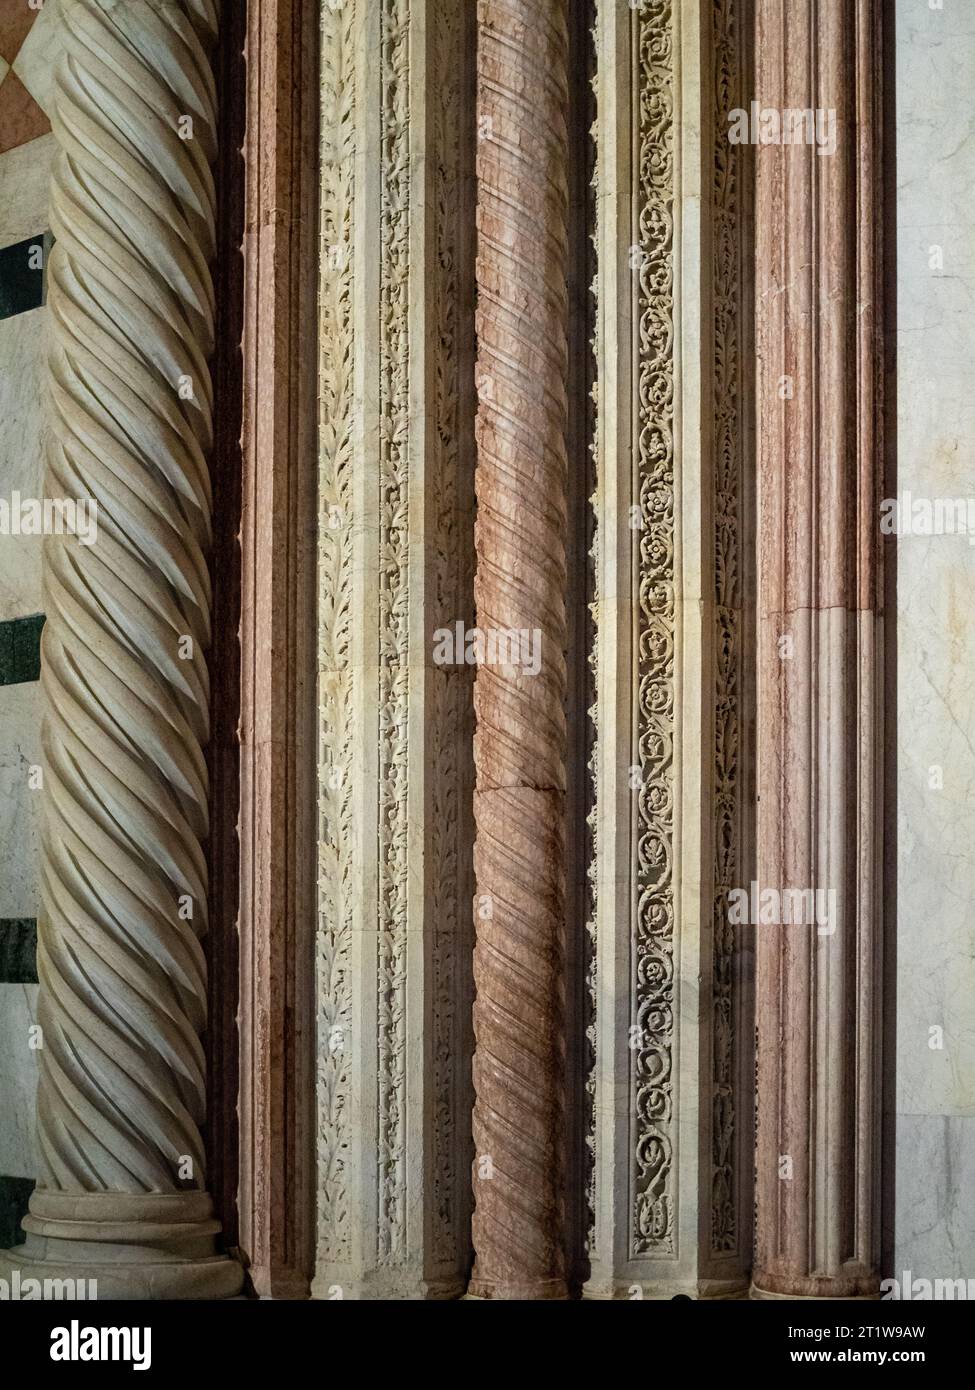 Polychromatische Steinschnitzerei des Duomo von Siena Stockfoto